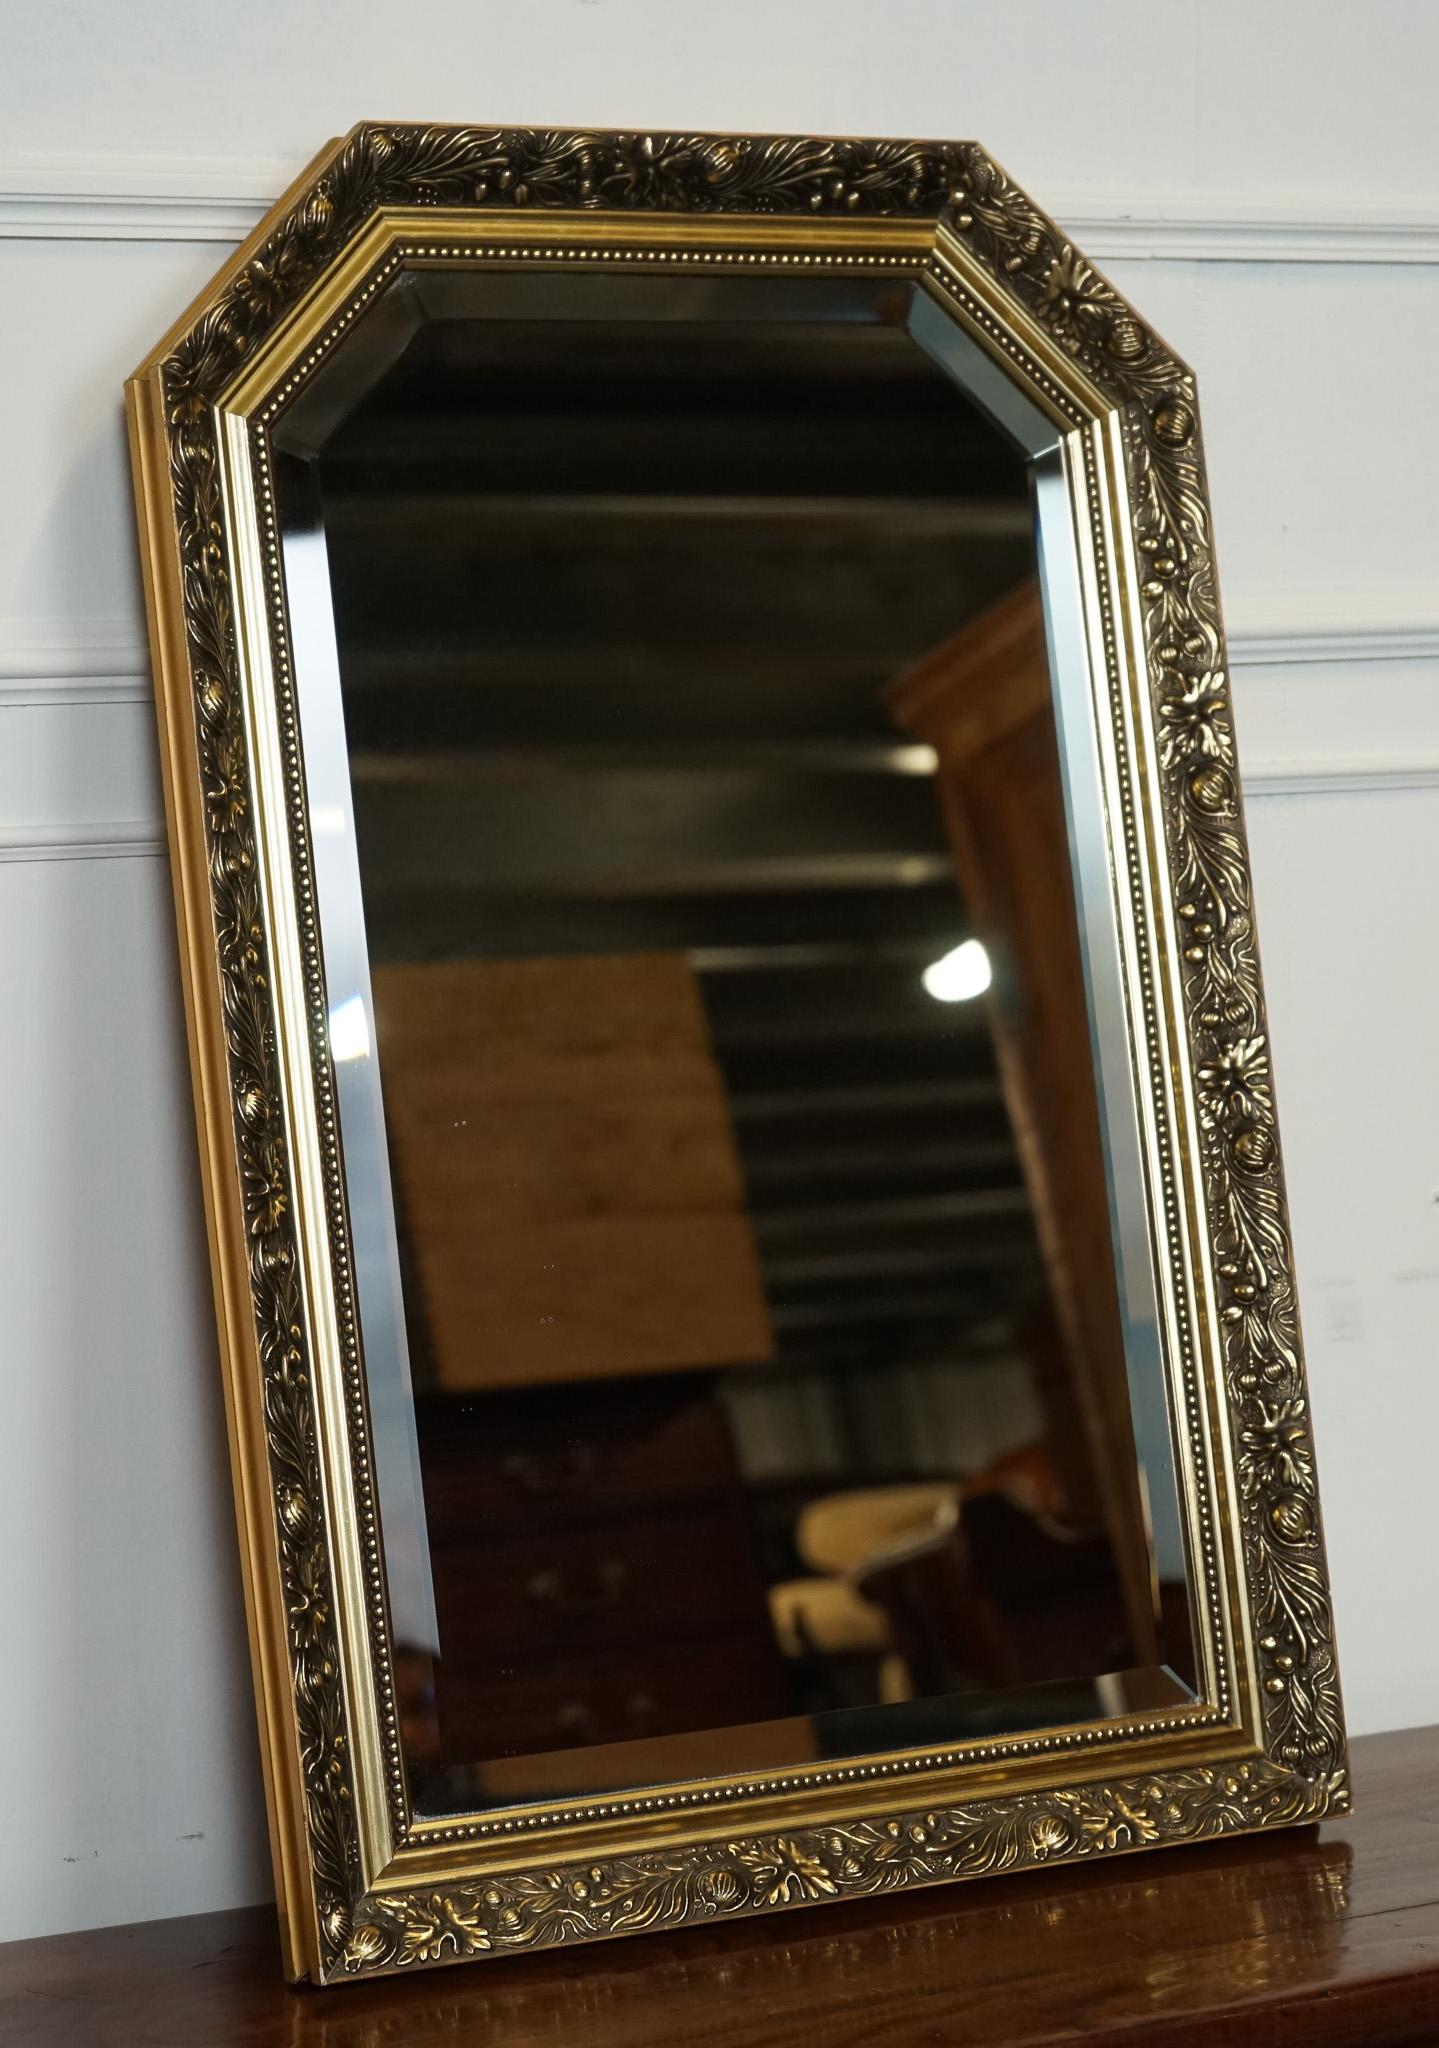 
Nous sommes ravis d'offrir à la vente ce miroir biseauté orné Vintage By.

Veuillez examiner attentivement les photos pour vous rendre compte de leur état avant d'acheter, car elles font partie de la description. Si vous avez des questions,